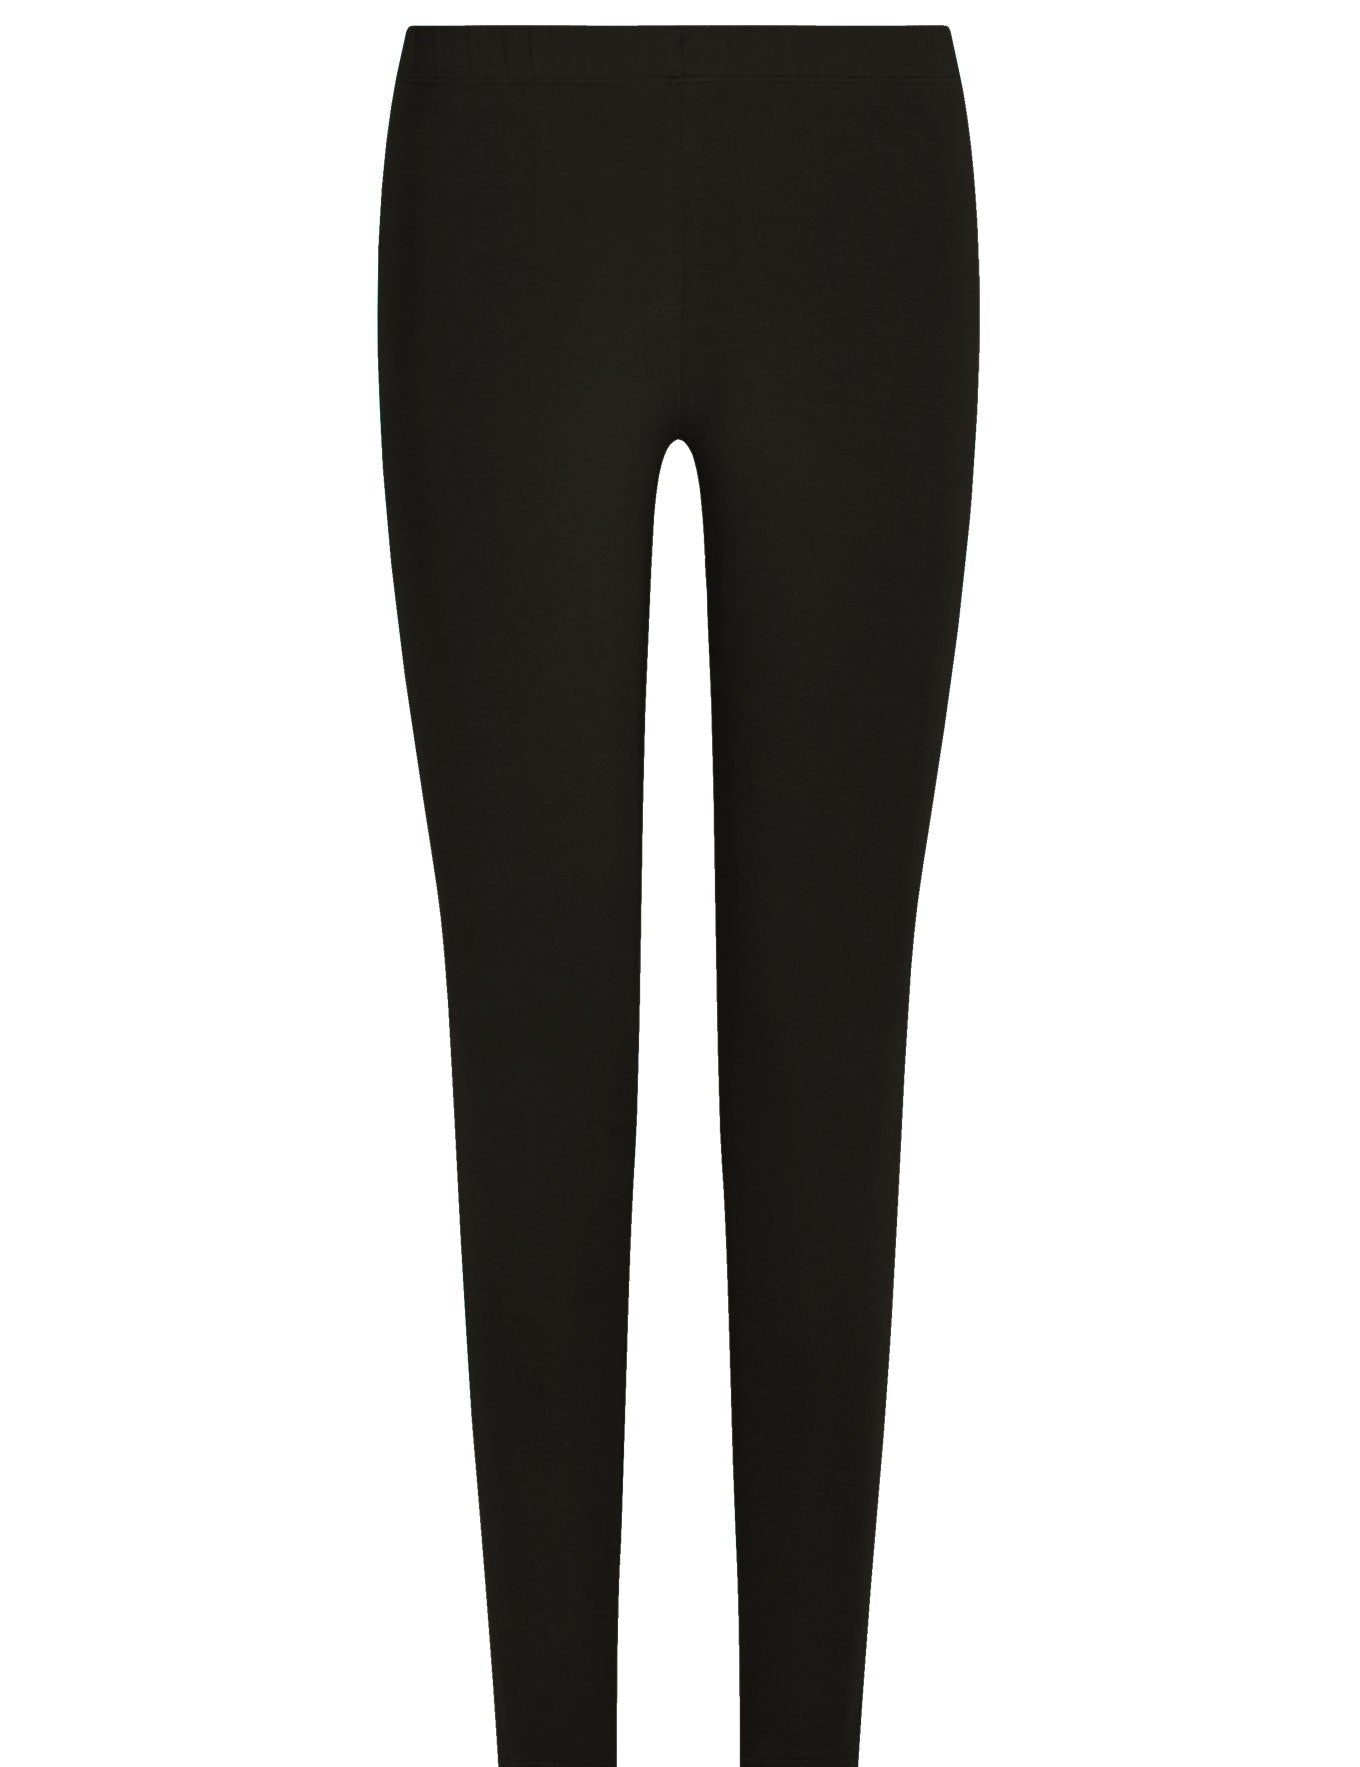 trousers-sato-lenzing-modal-leggings-black-3.jpg